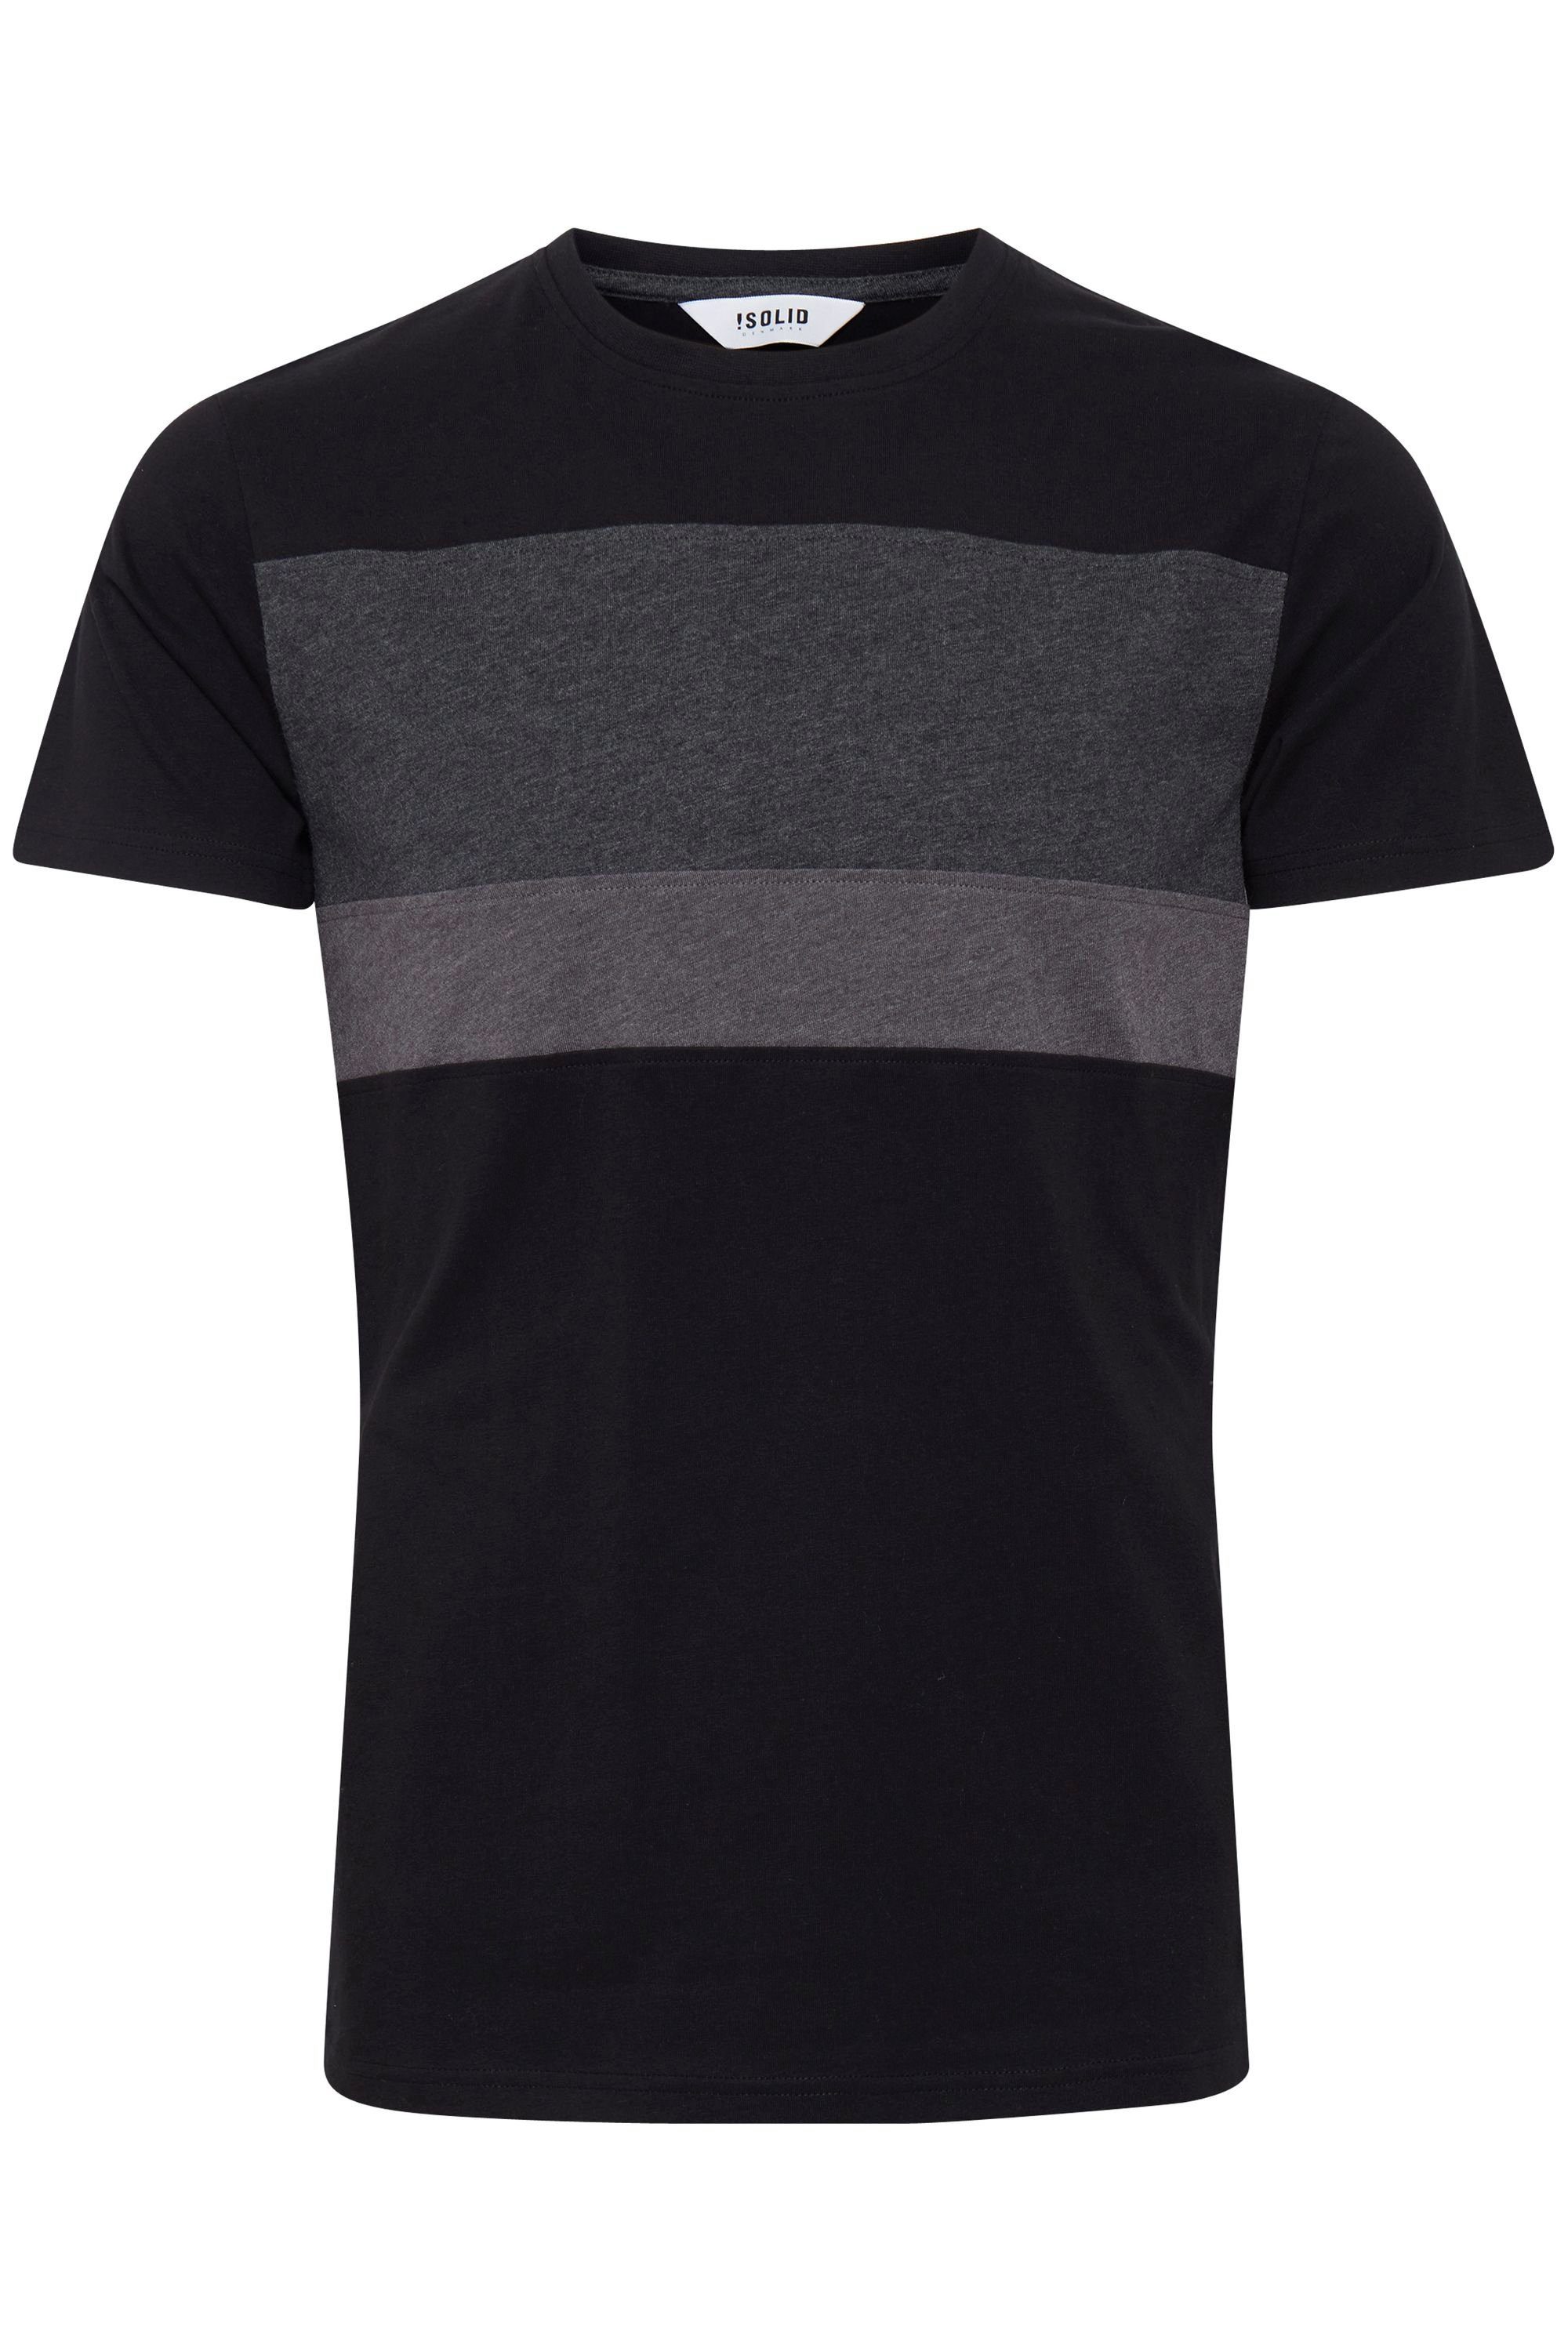 !Solid Rundhalsshirt SDSascha T-Shirt in Tricolor Streifenoptik Black (9000)